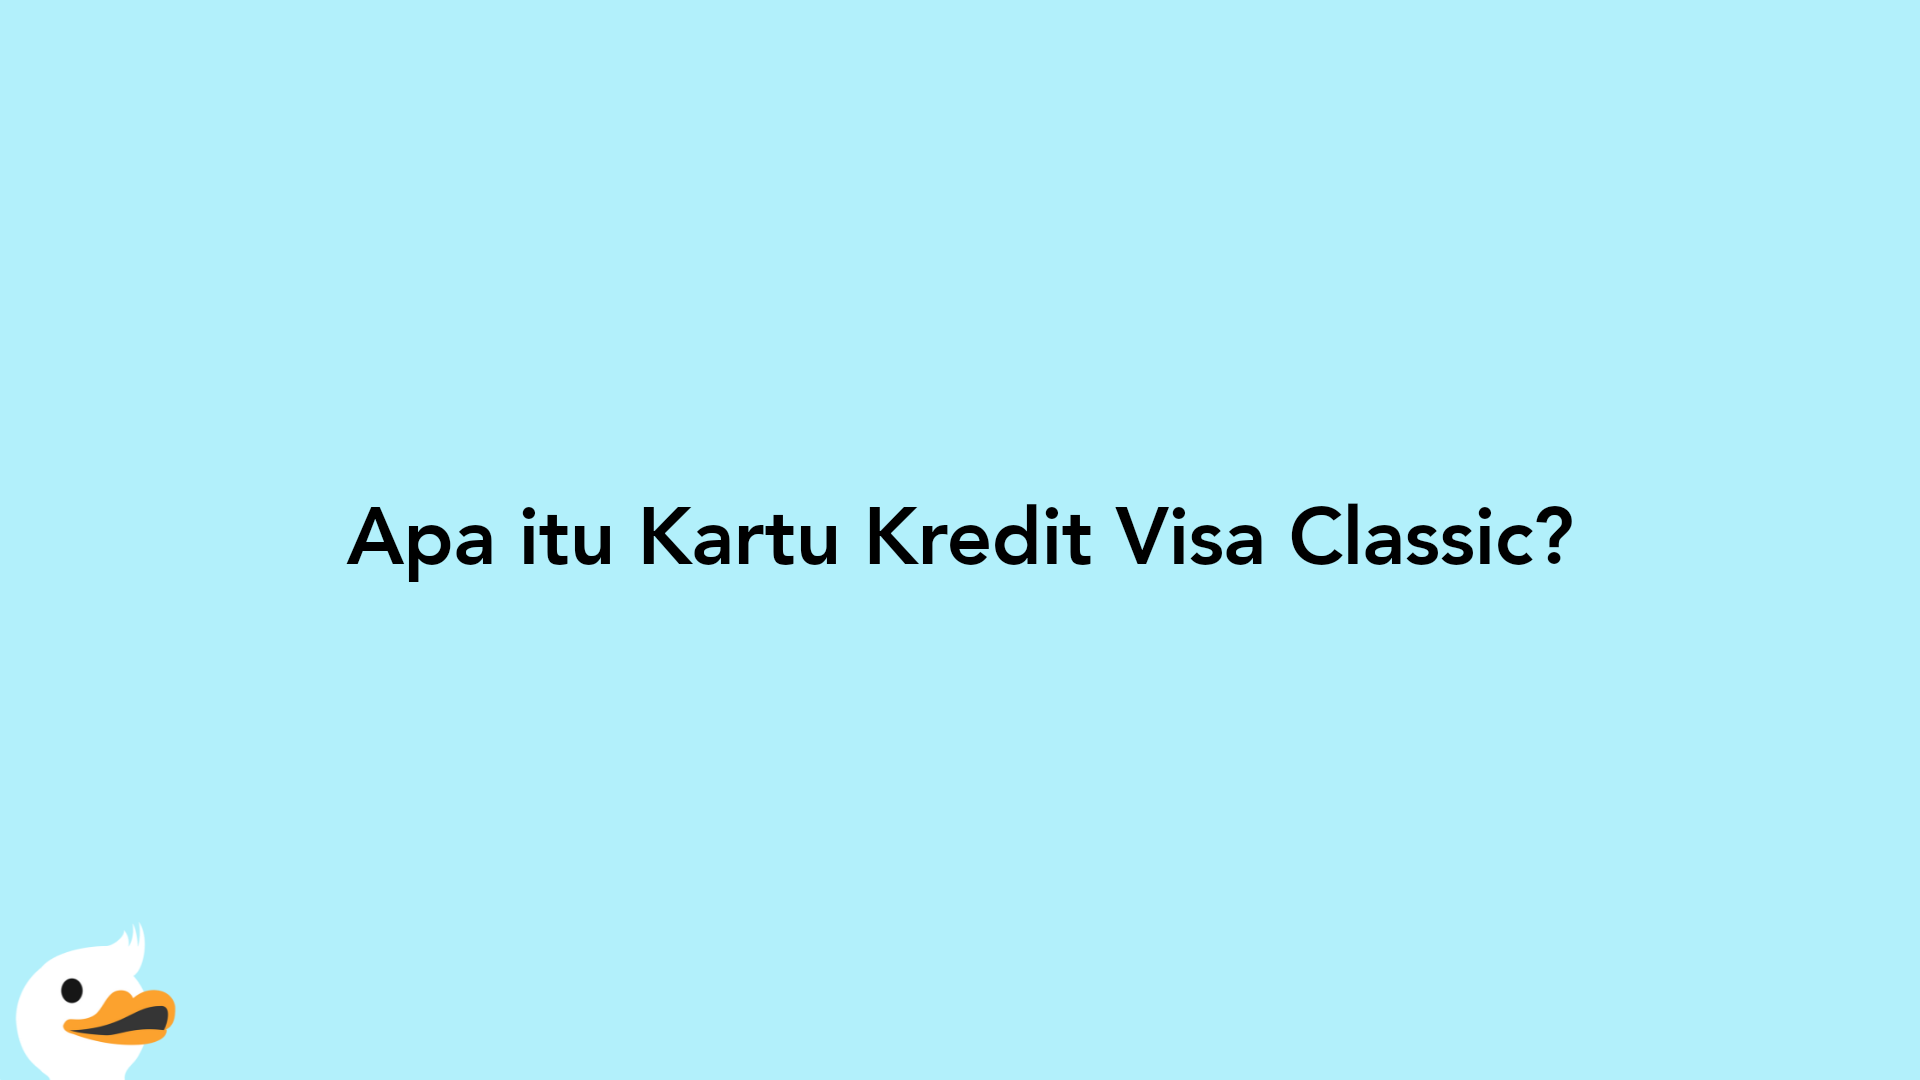 Apa itu Kartu Kredit Visa Classic?